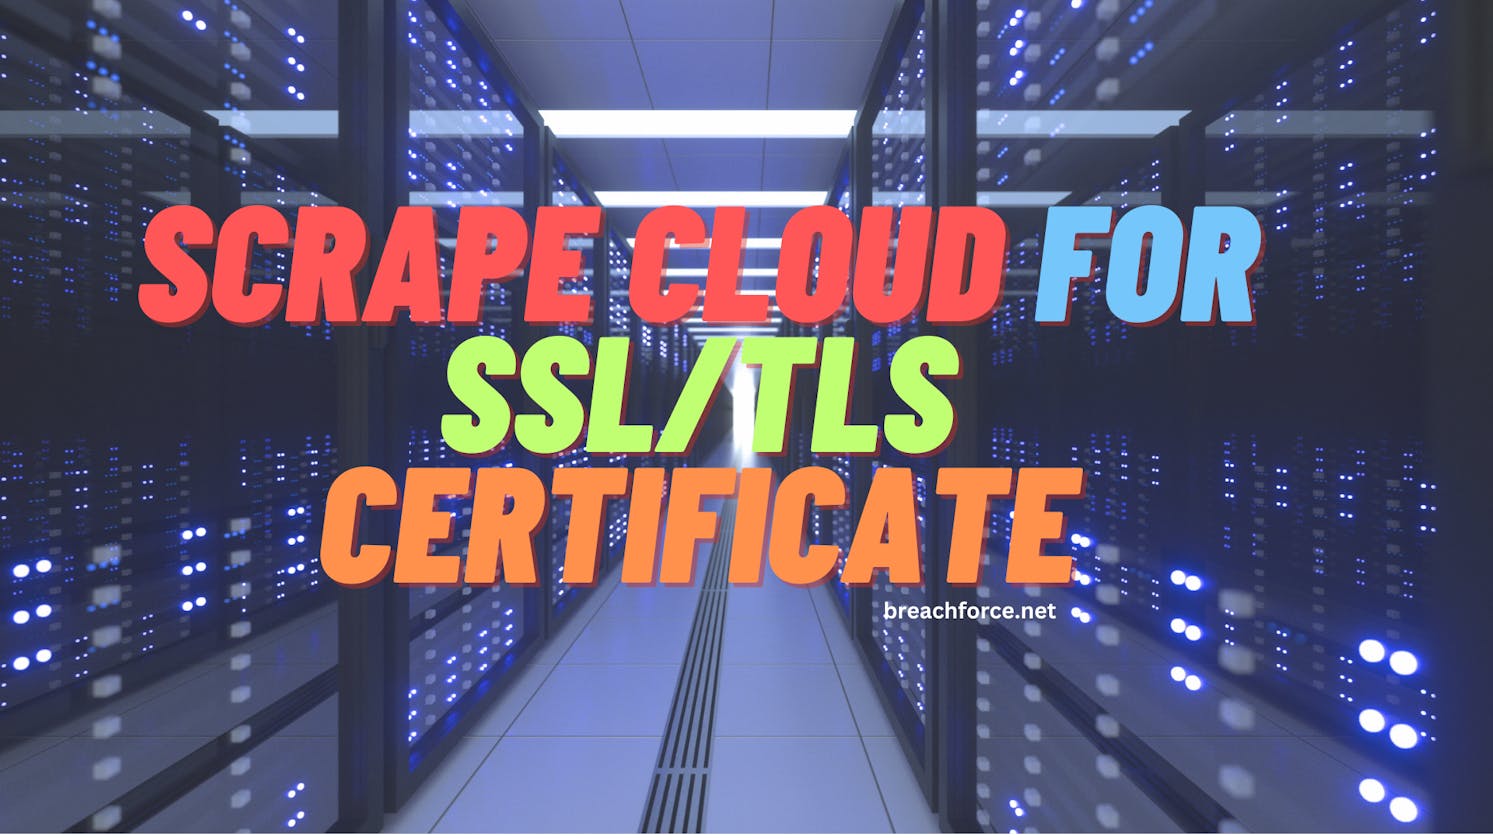 Scrape Cloud for SSL/TLS Certificate